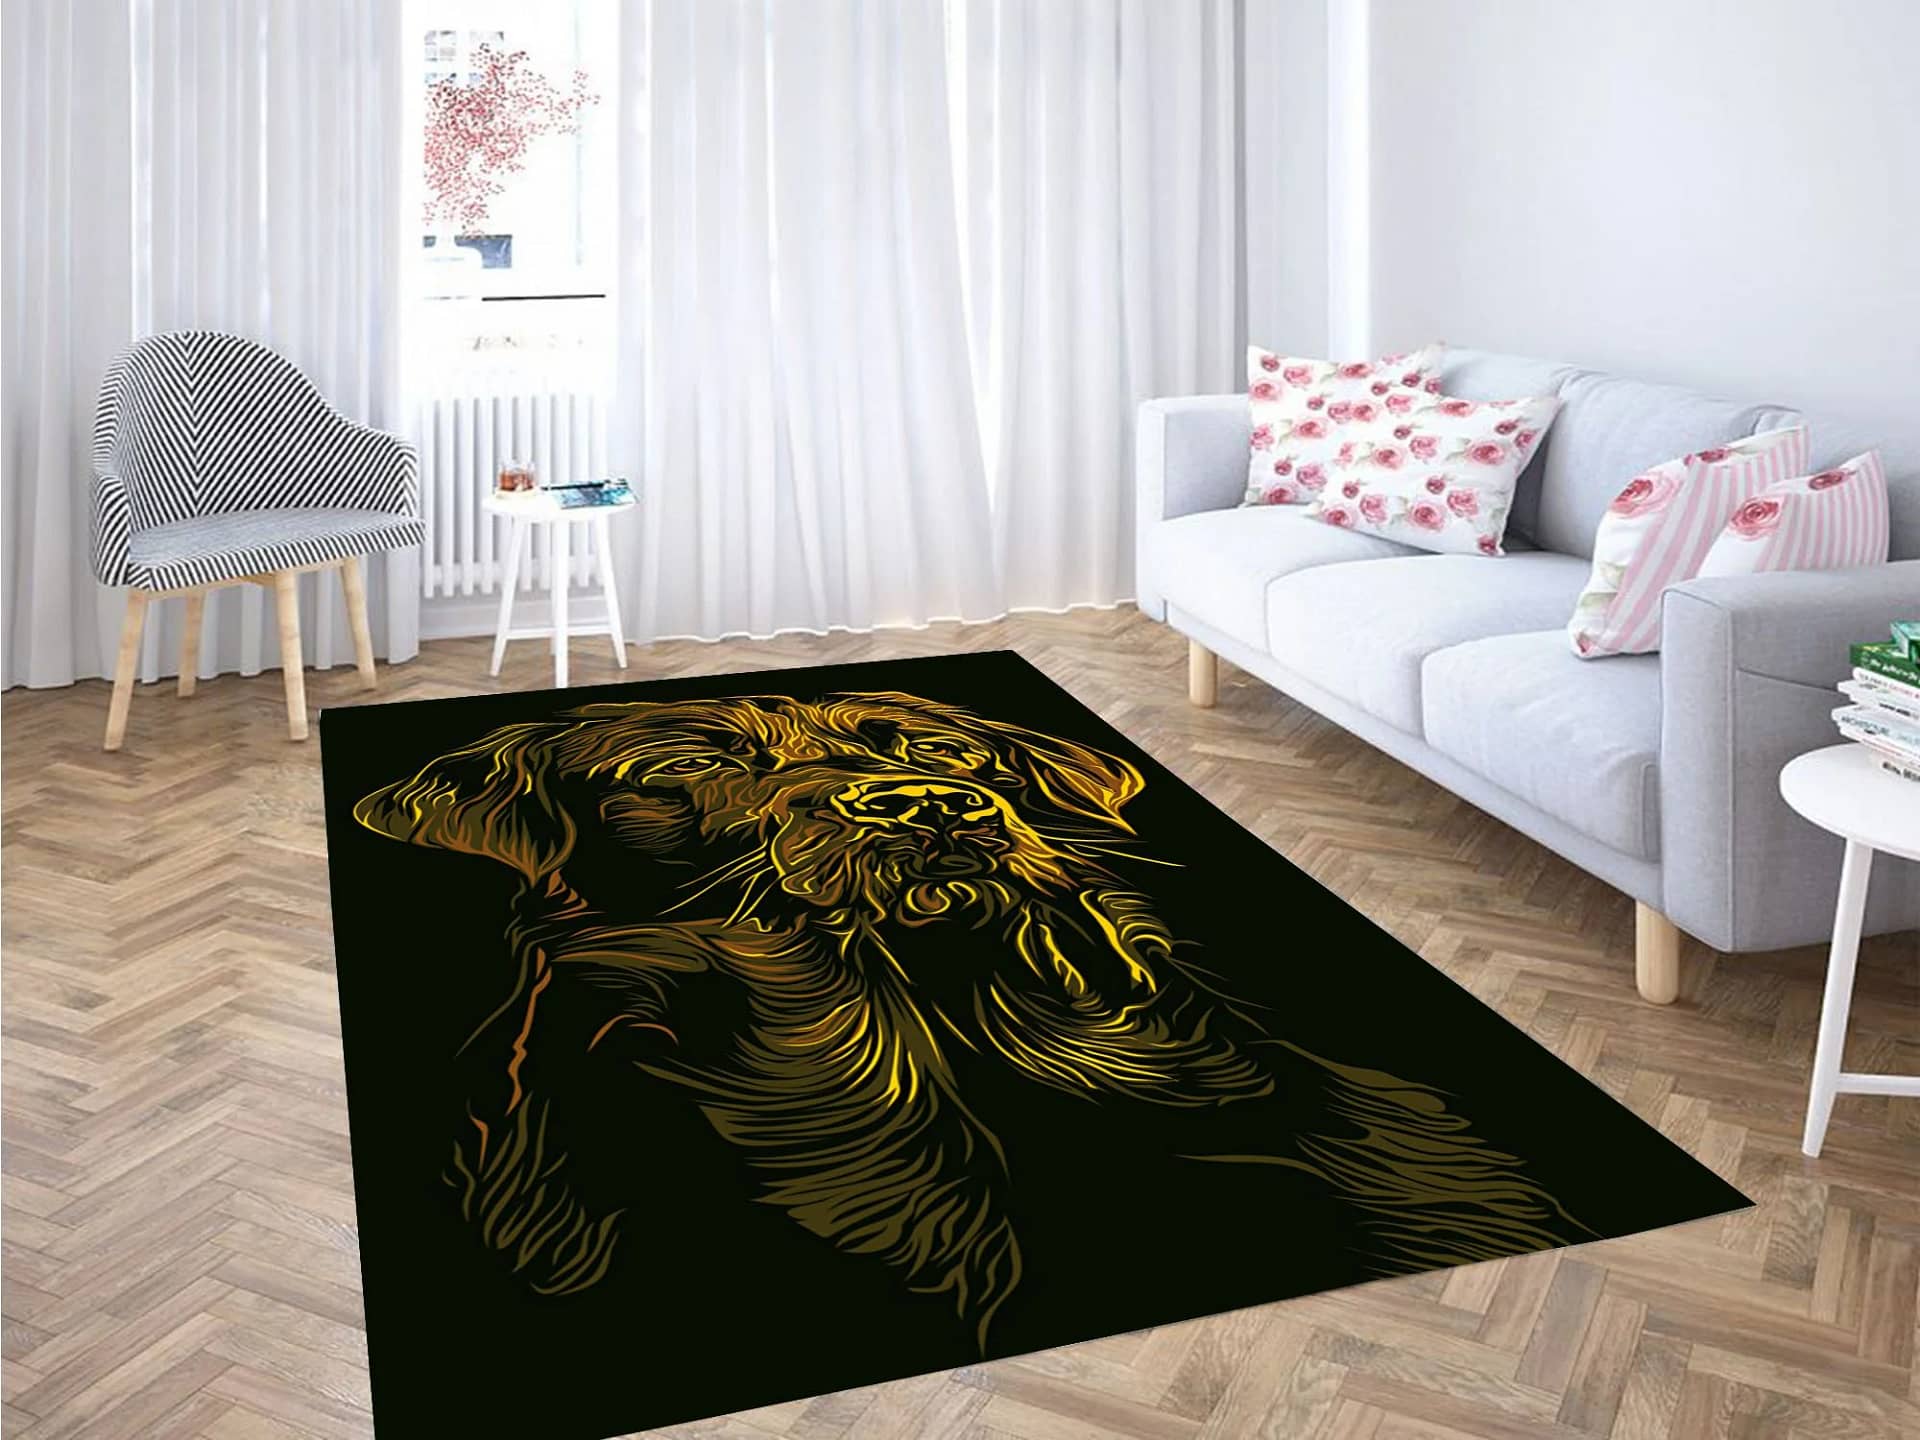 Yellow Dog Carpet Rug